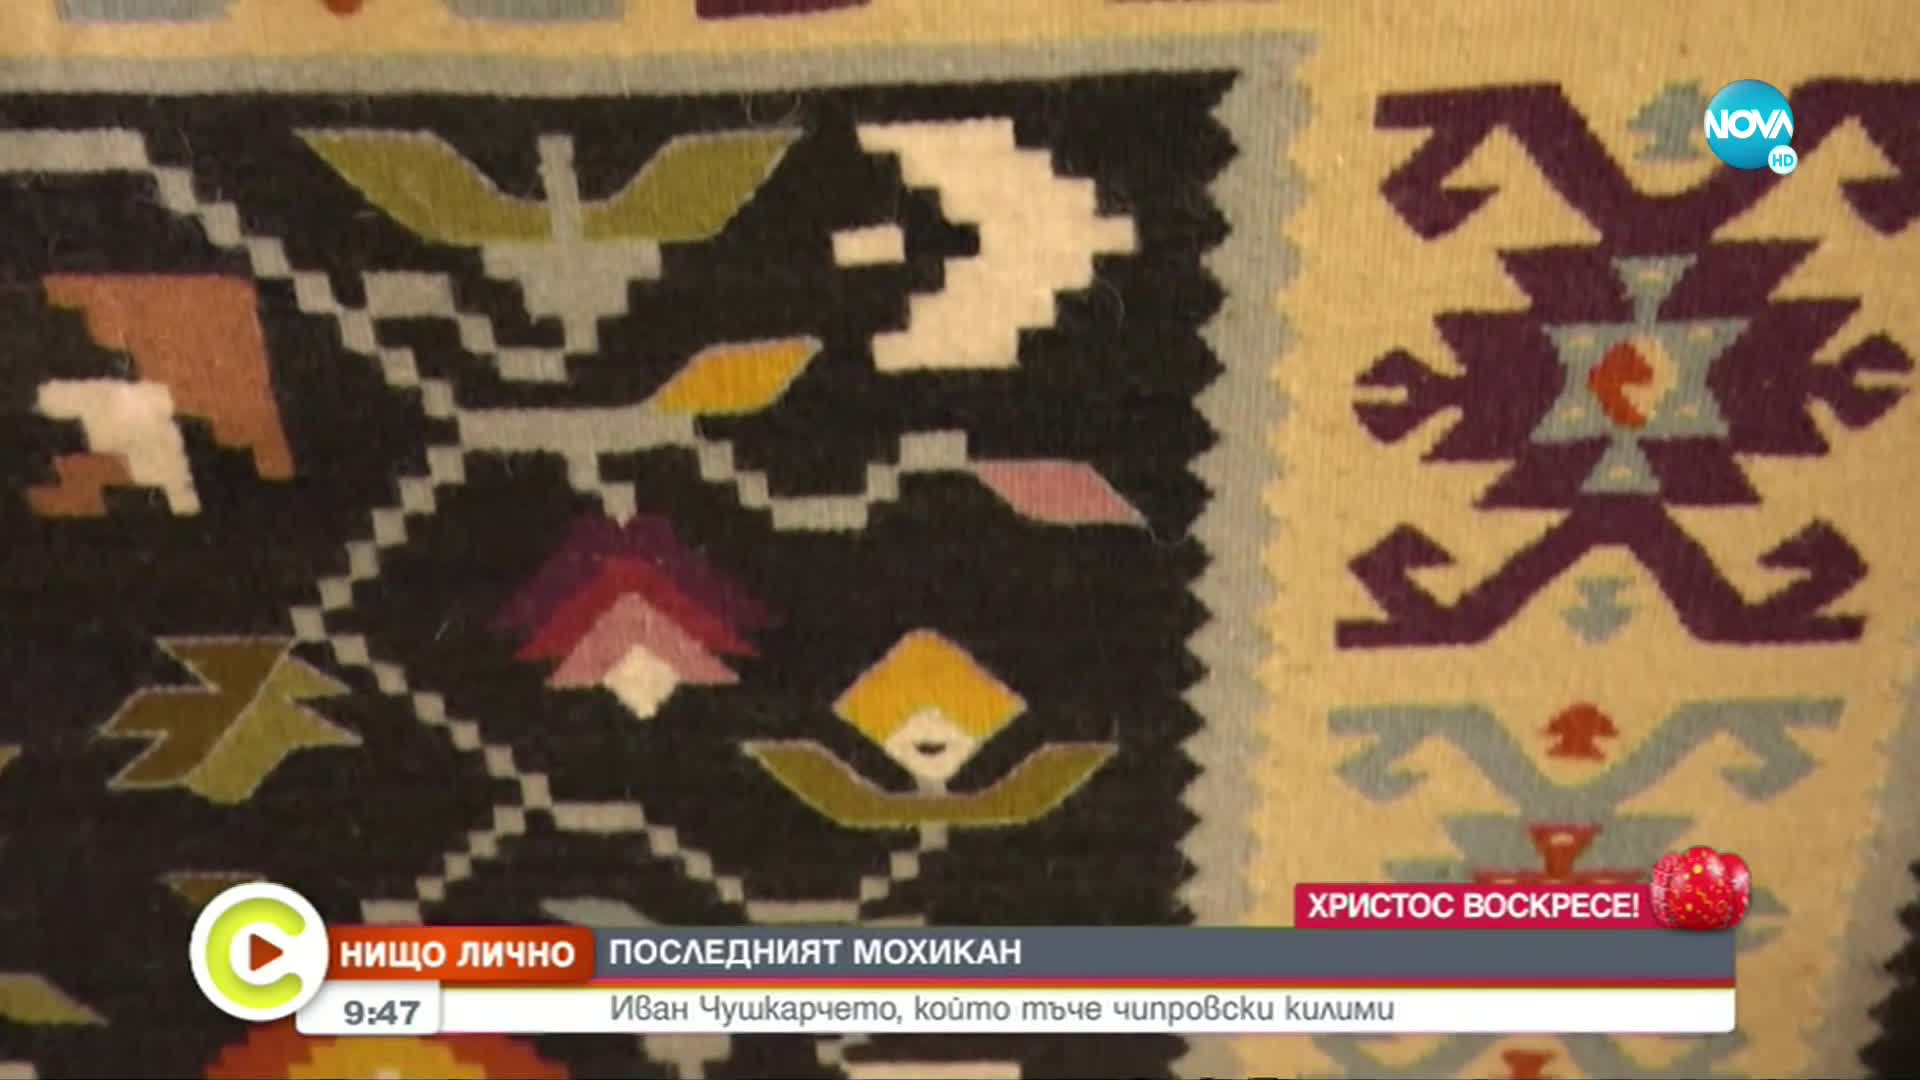 “НИЩО ЛИЧНО”: Среща с единствения мъж в България, който тъче чипровски килими